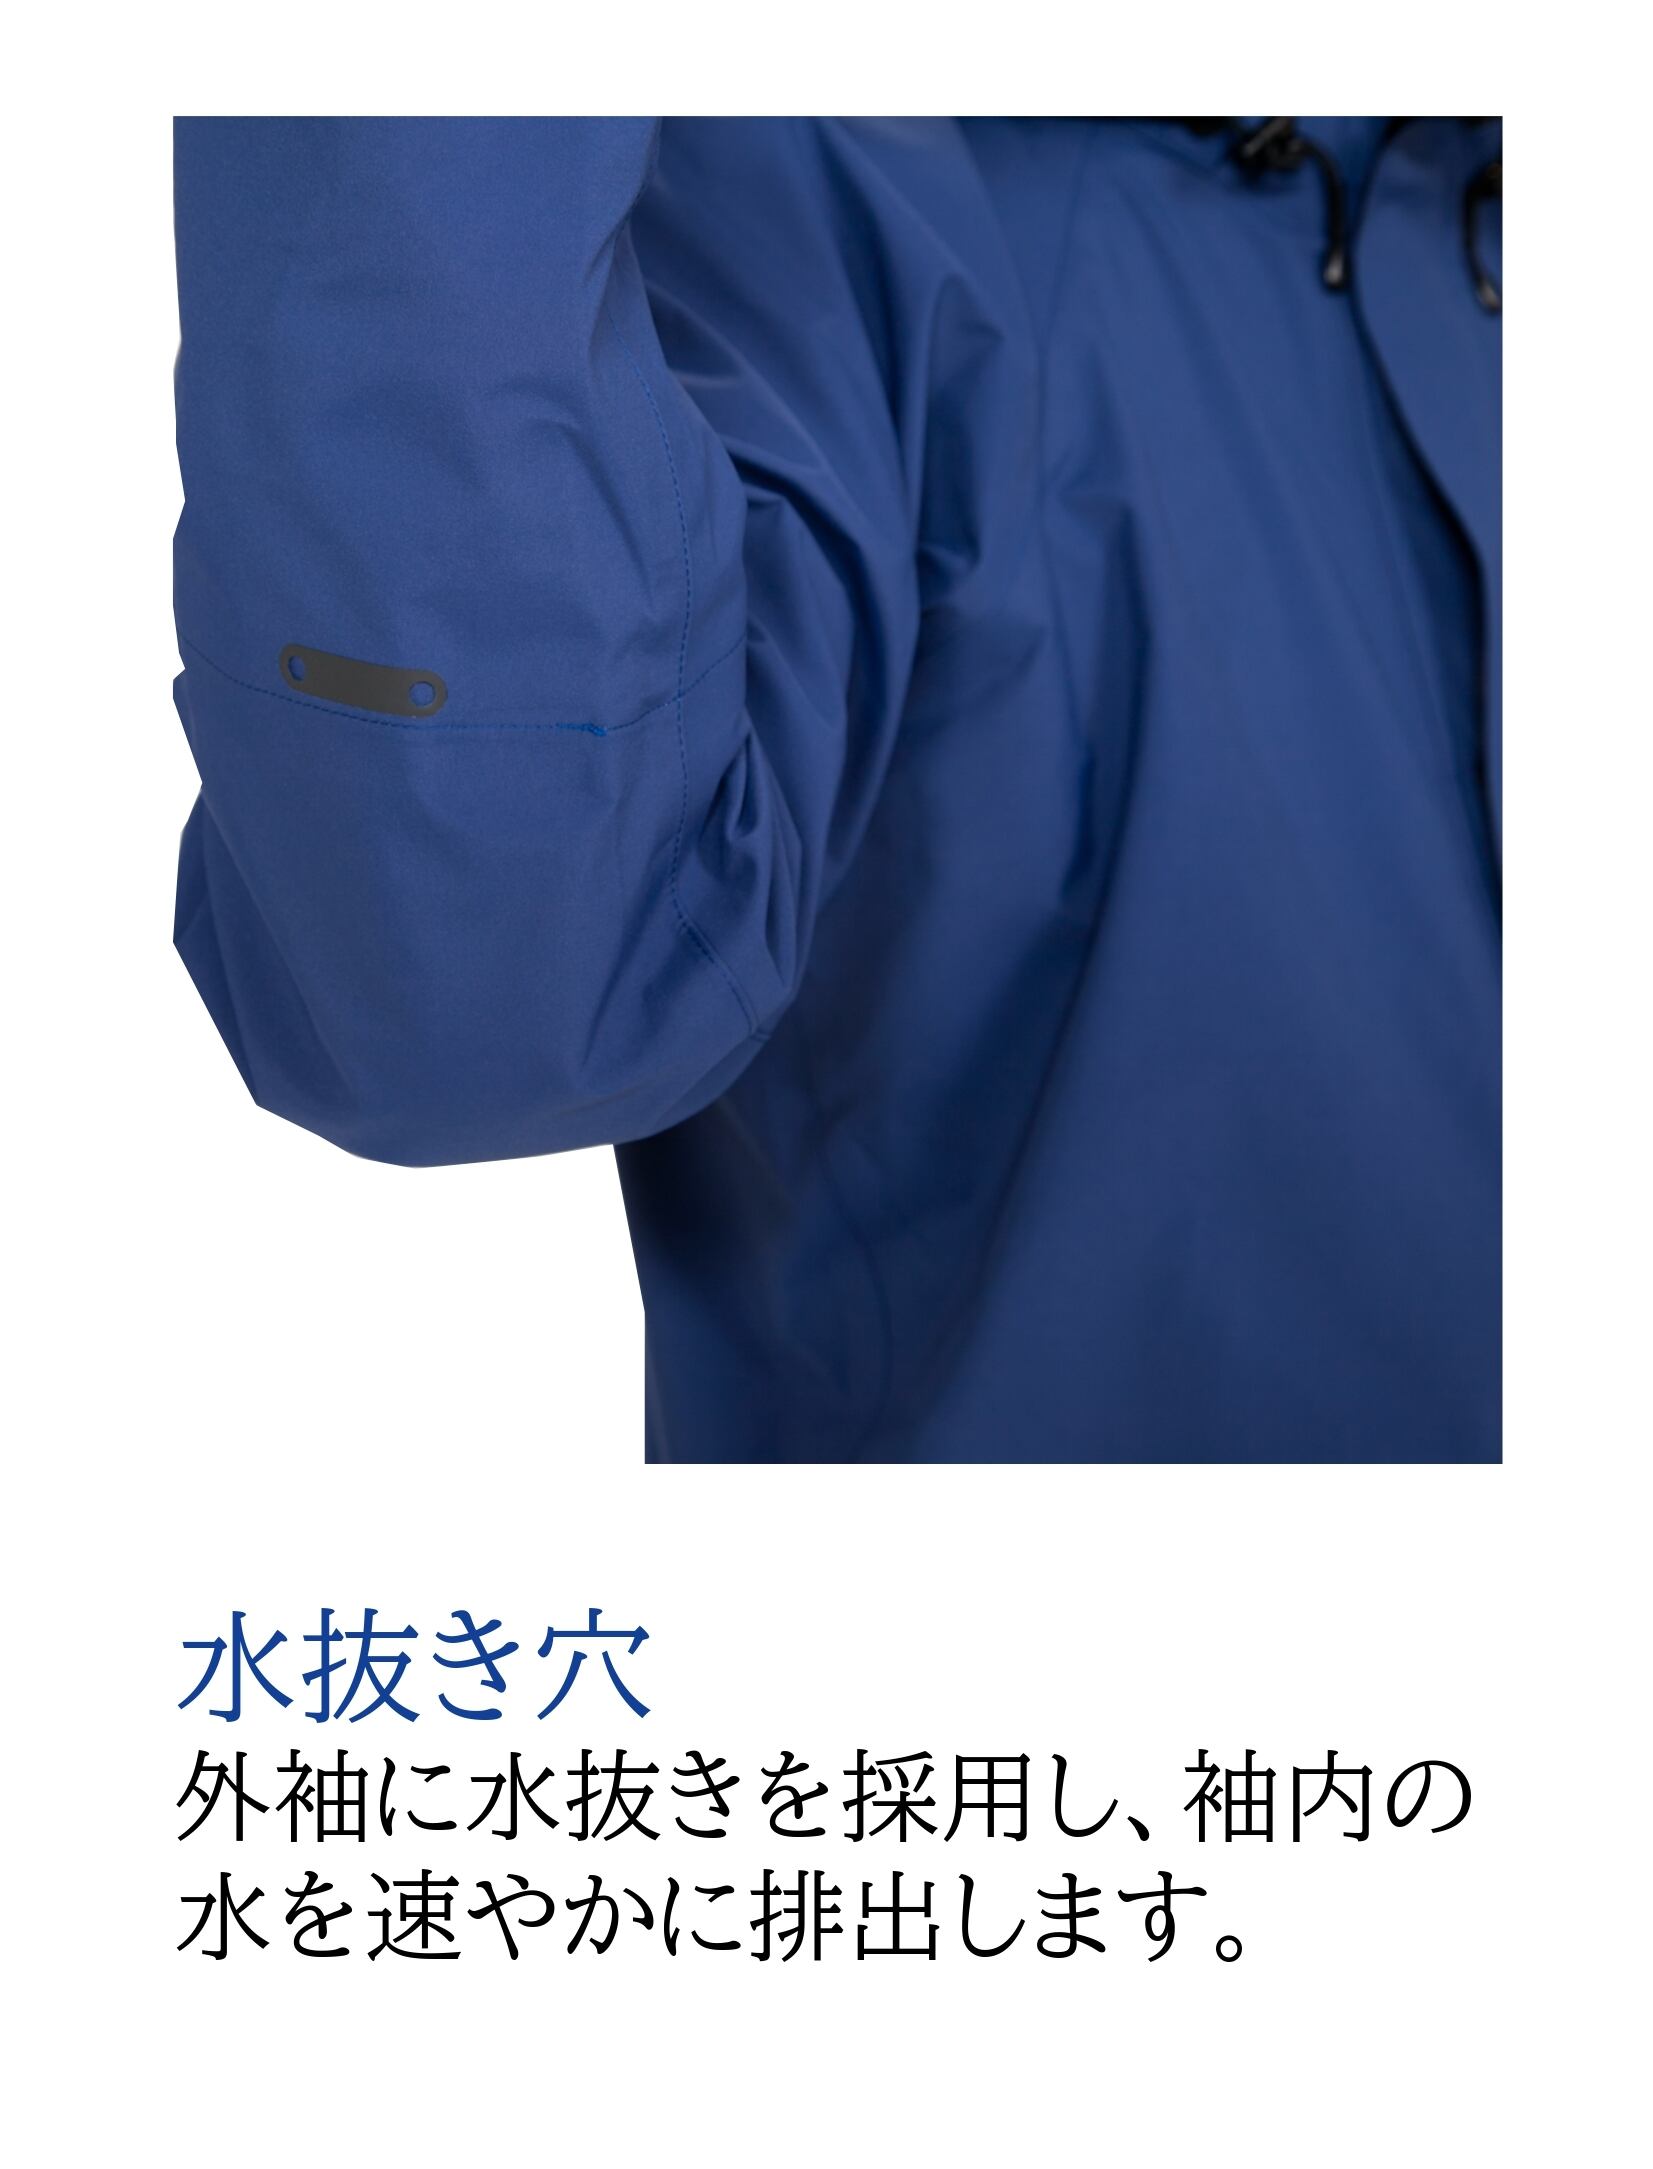 MAEGAKI] AP2500 レインマイスター ゴアテックス® プロ仕様 レインスーツ 収納袋付き Maegaki Rain Wear  Collection